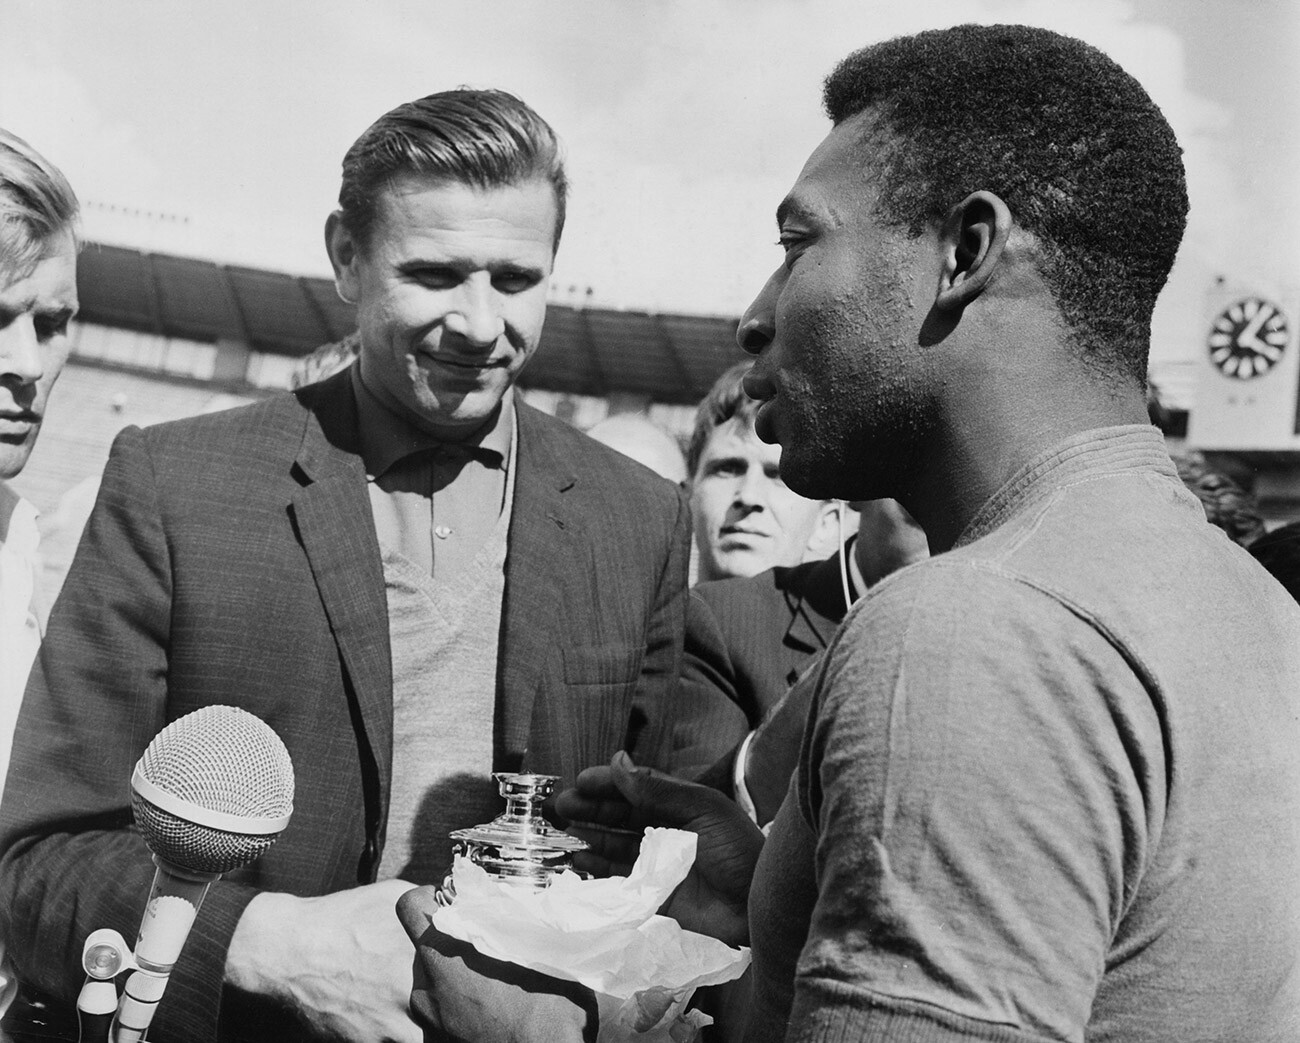 Lev Yashin mempersembahkan samovar mini kepada Pelé sebelum pertandingan persahabatan di Moskow, 1965.